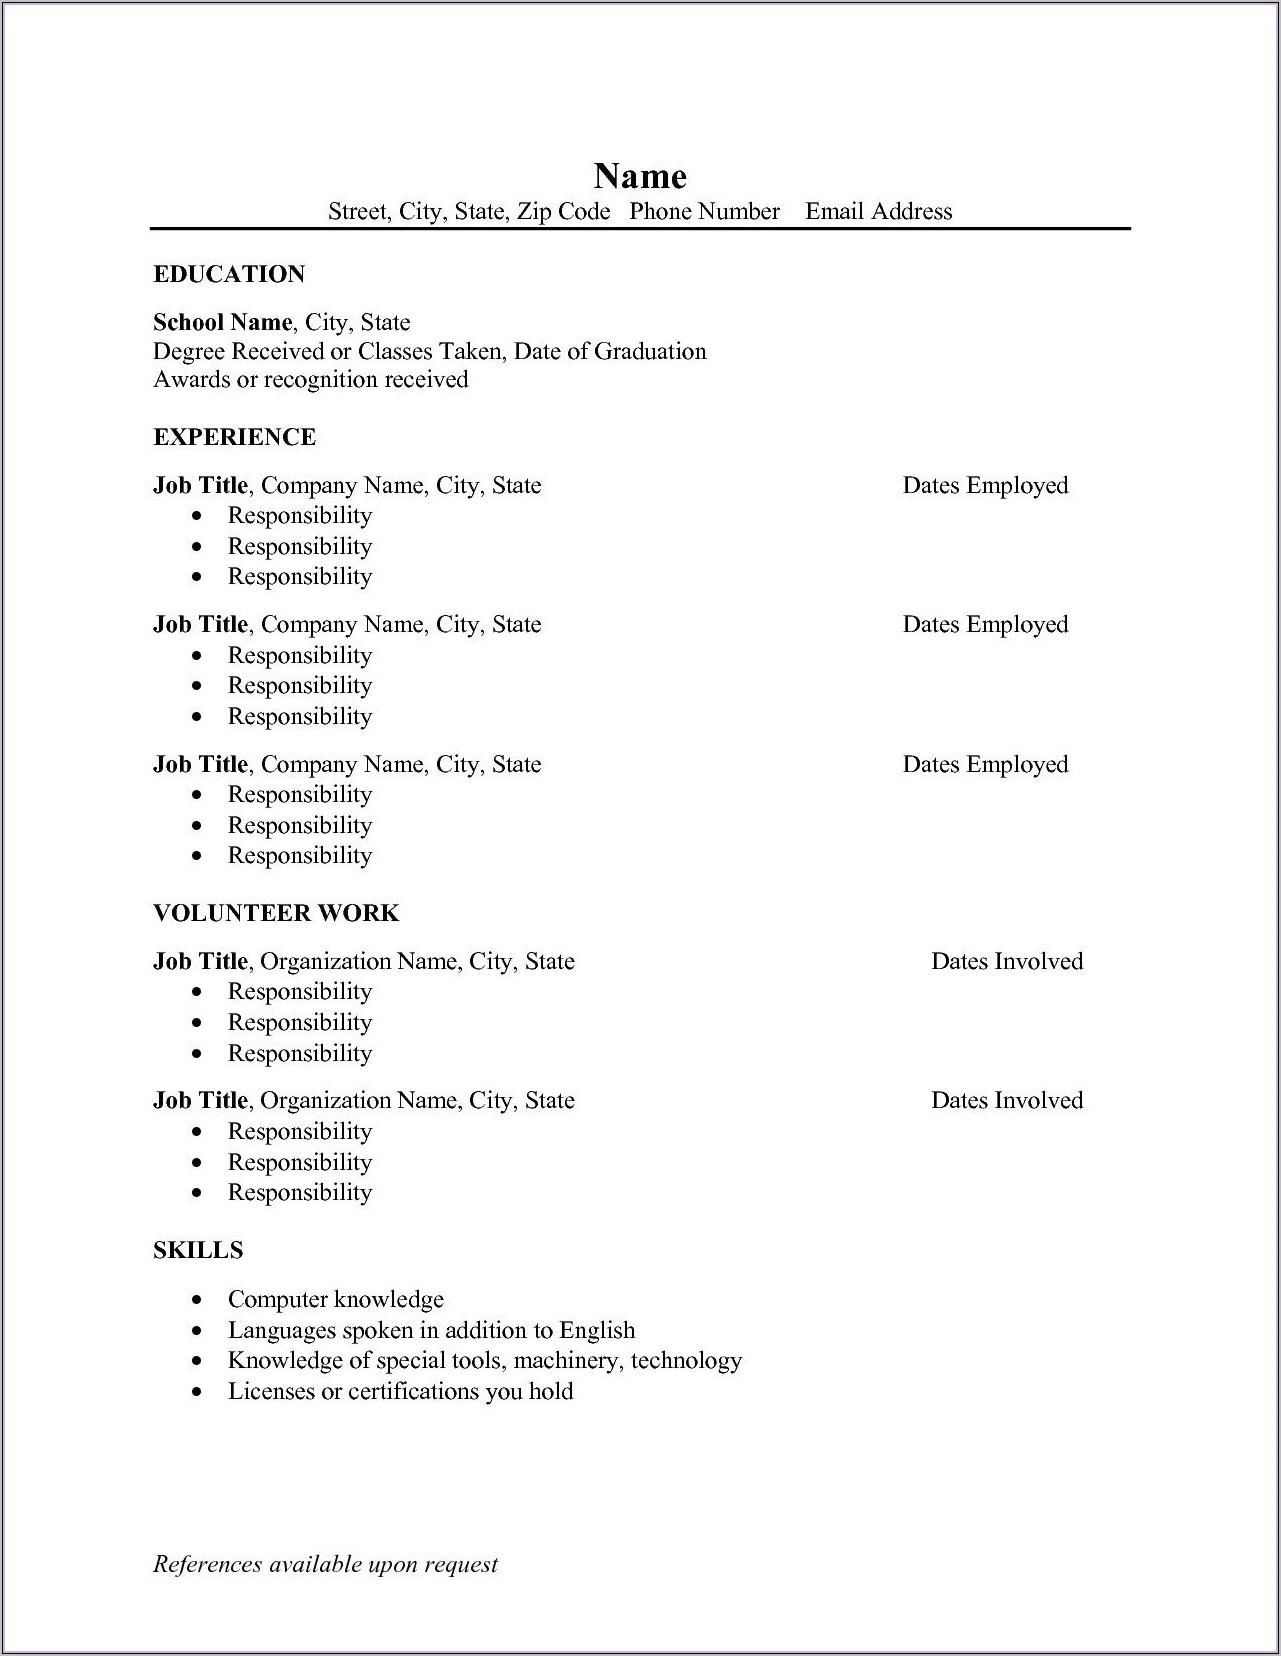 Resume Sample For Job Application Pdf Download